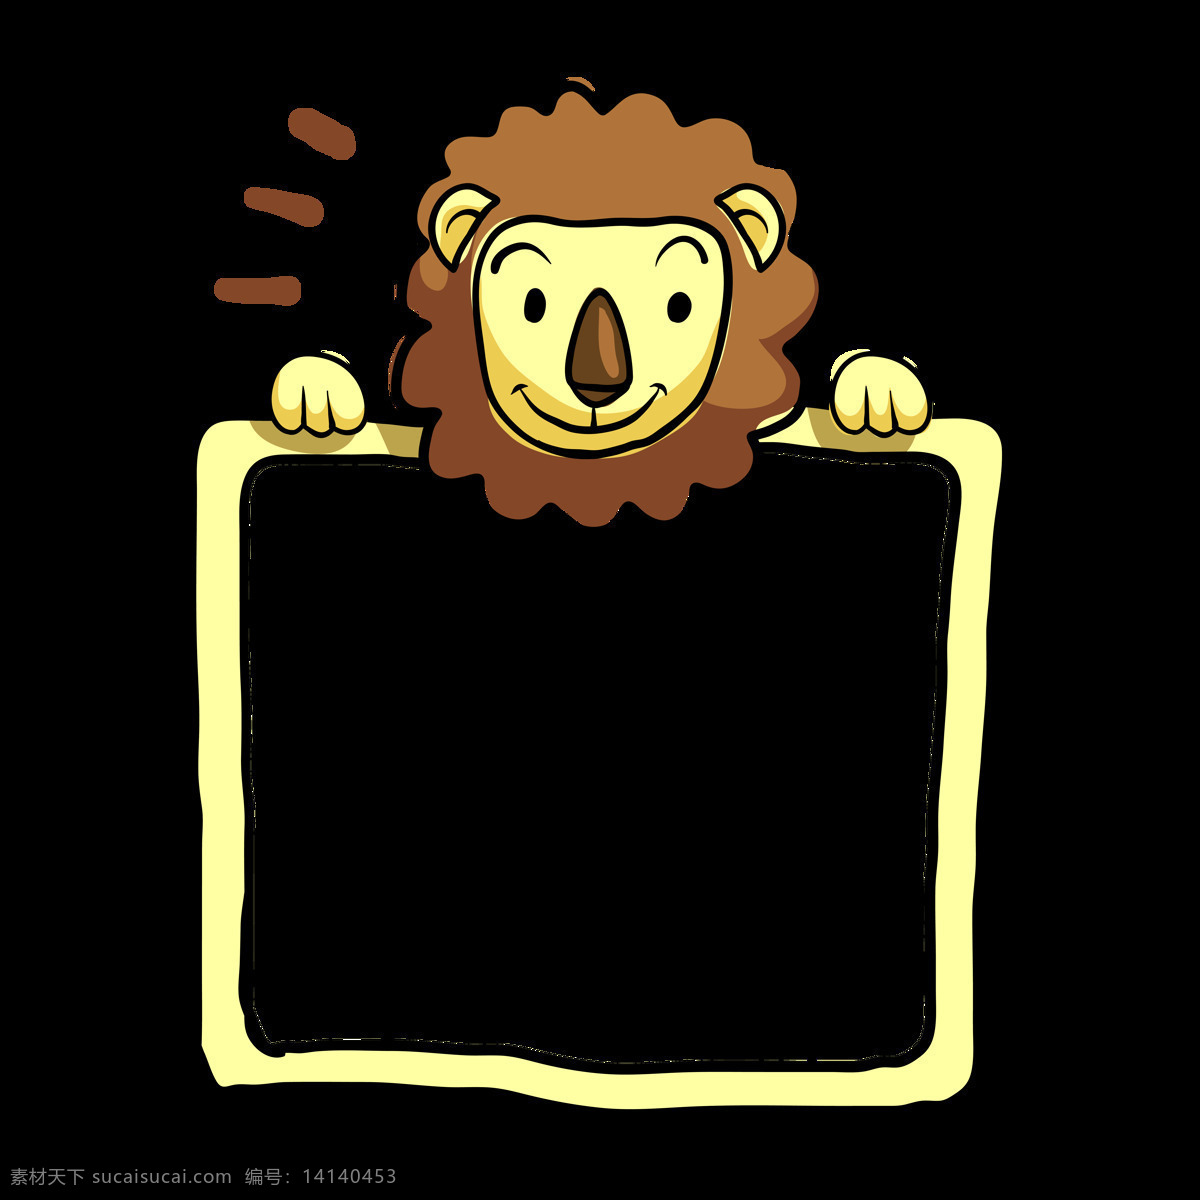 狮子图片 透明底狮子 png图 免扣图 狮子剪影 卡通狮子图片